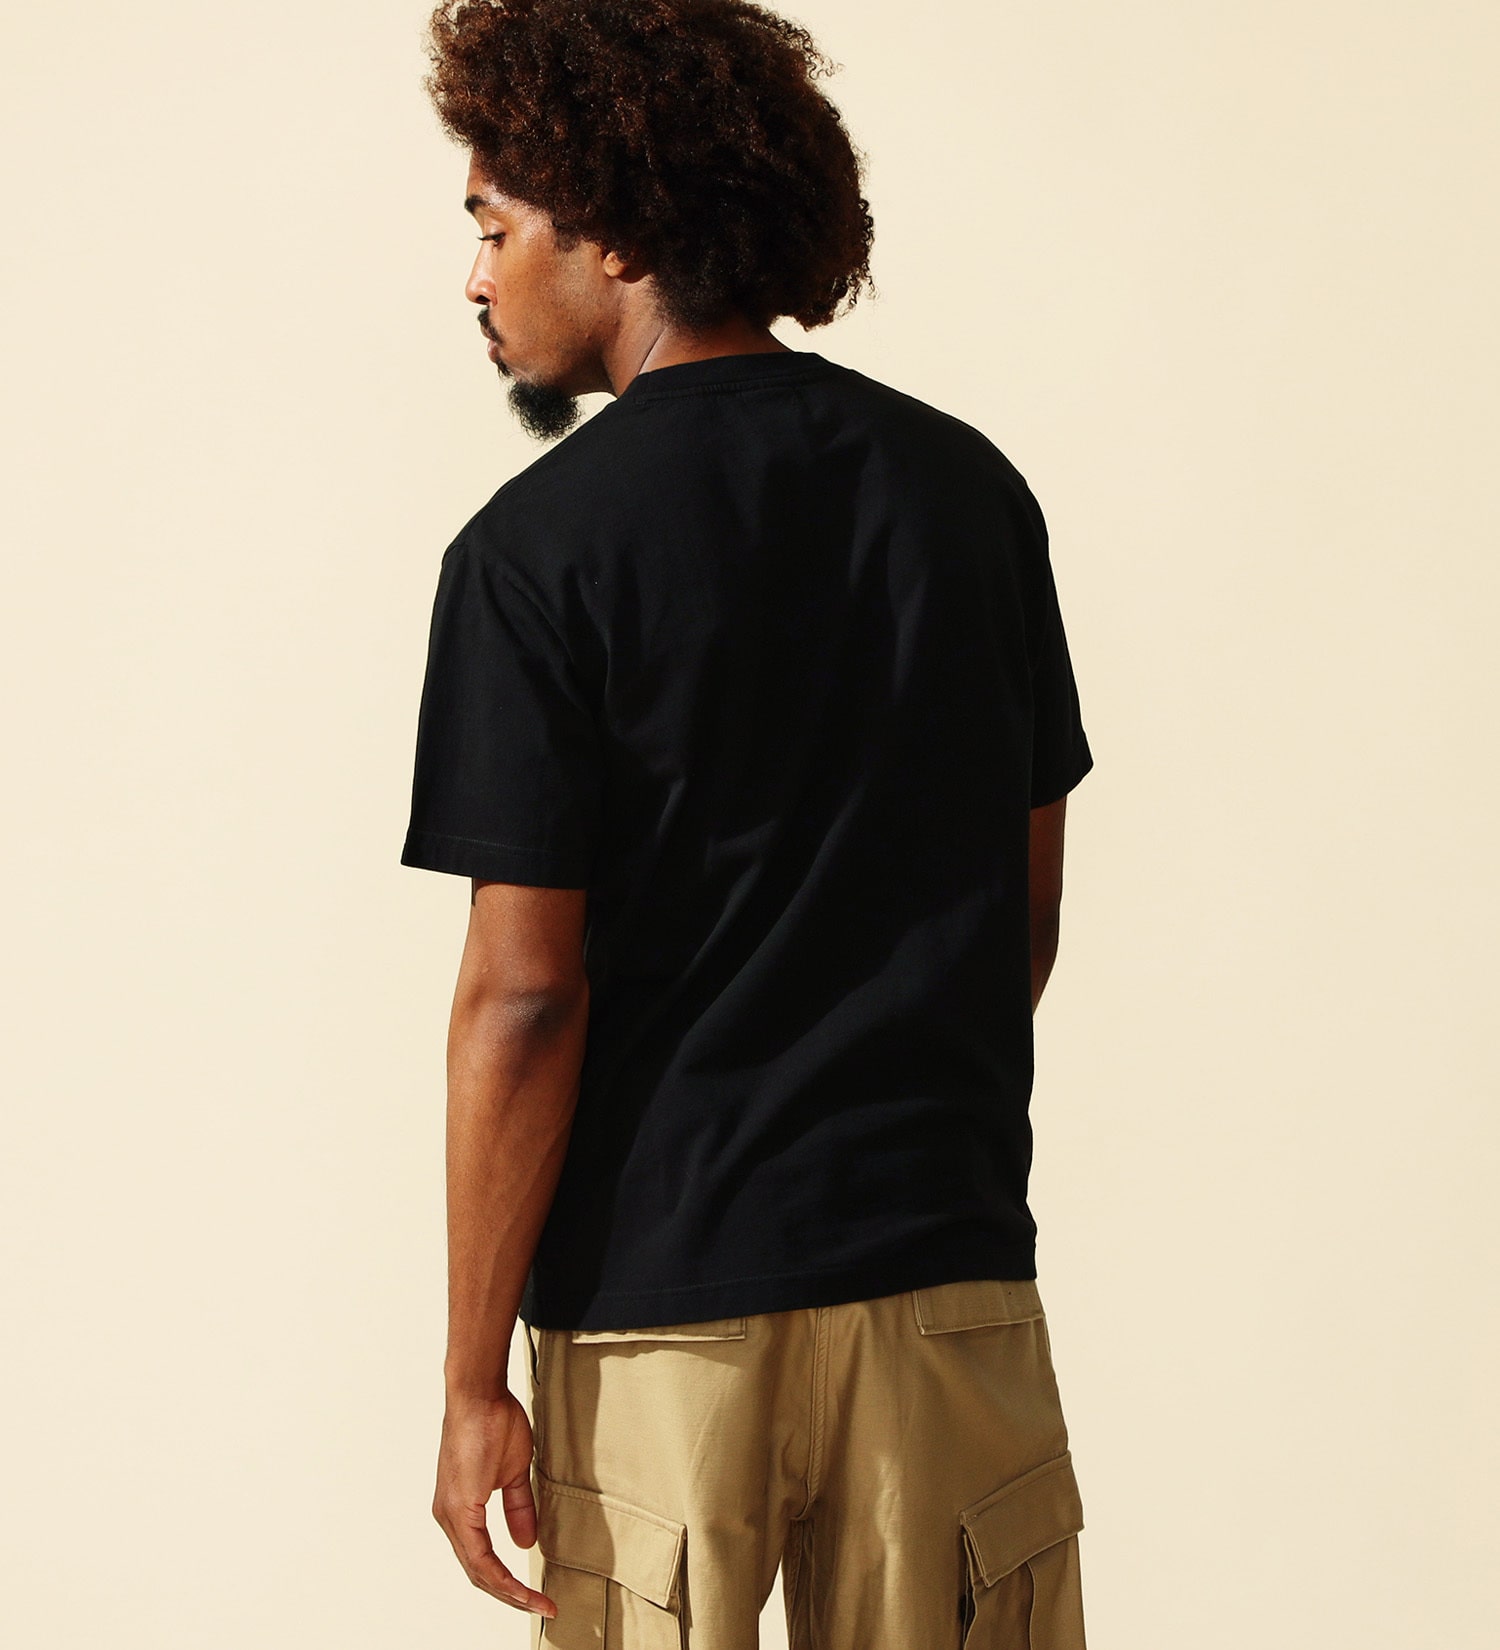 ALPHA(アルファ)のARMYプリントTシャツ 半袖|トップス/Tシャツ/カットソー/メンズ|ブラック